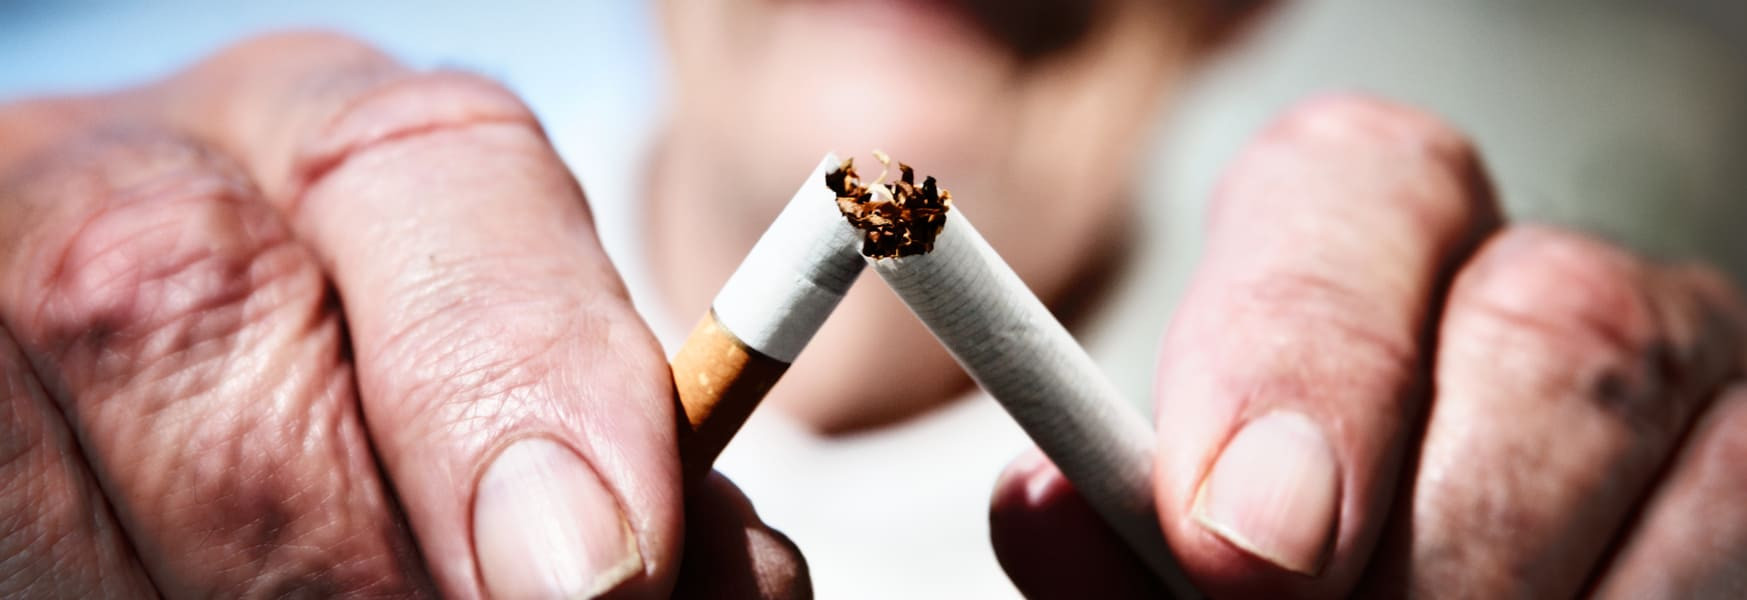 Karbon monoksida yang terdapat dalam asap rokok bersifat racun karena